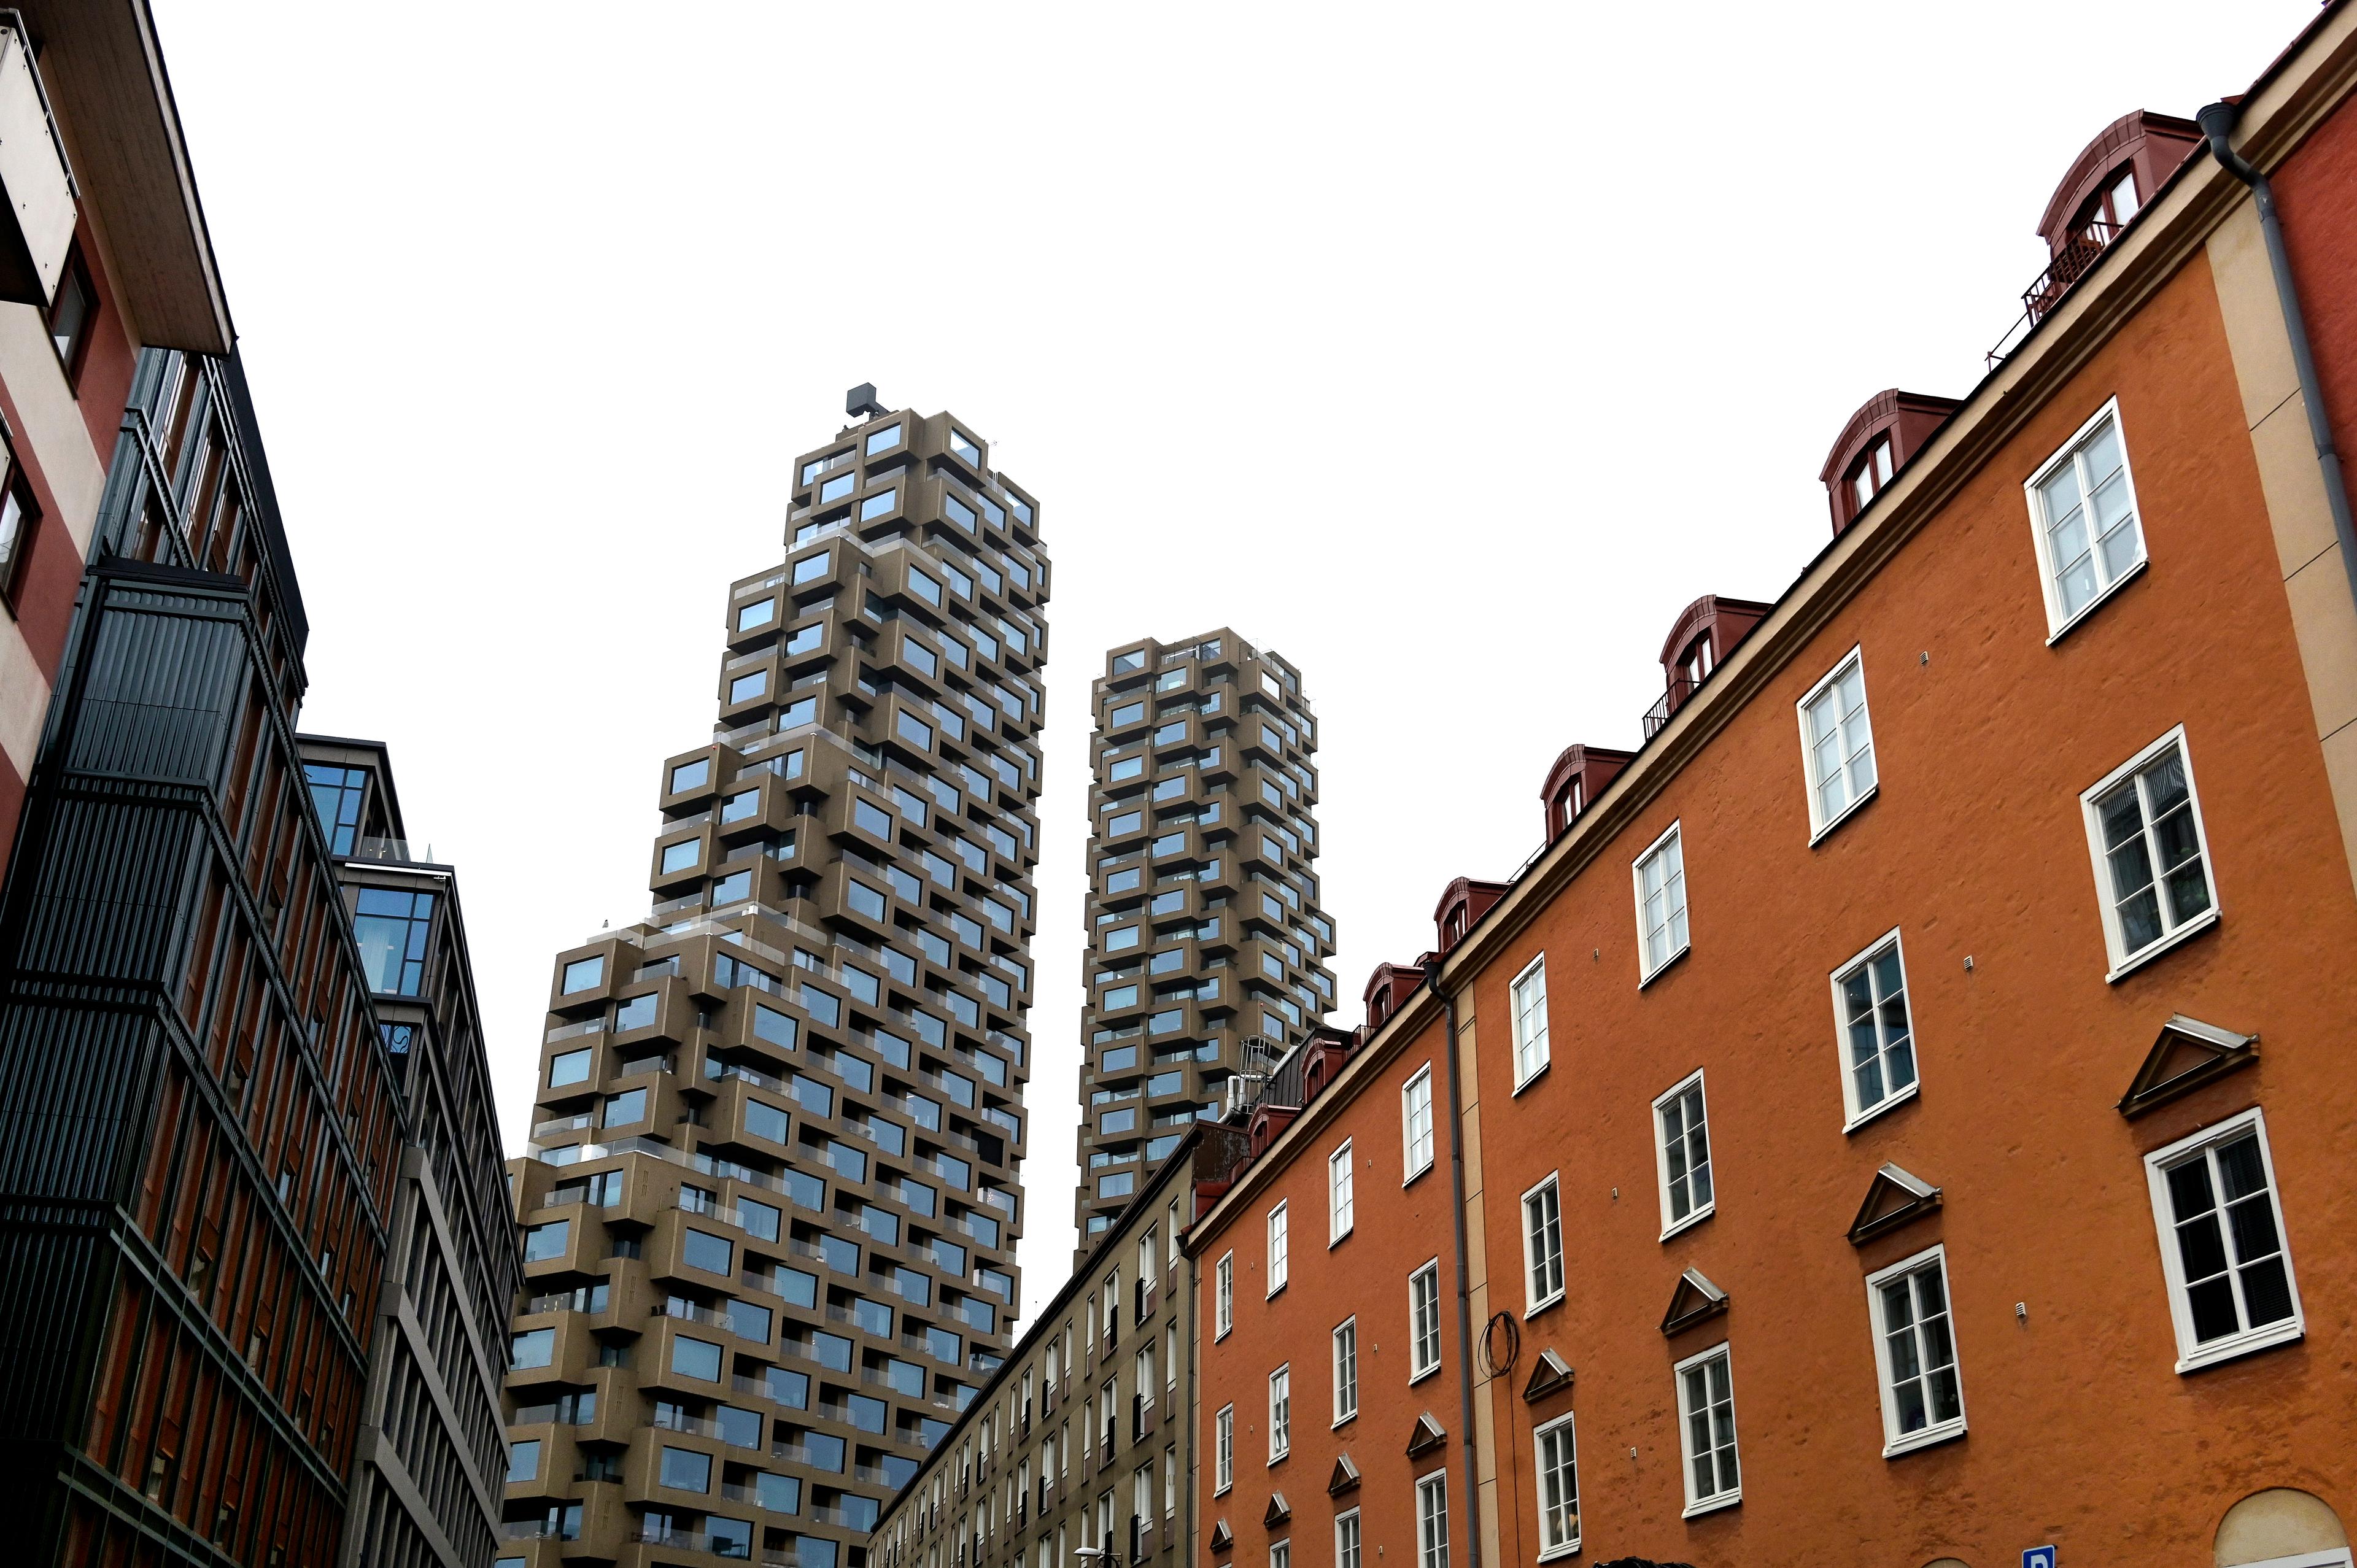 Det har slagits nytt rekord i hur stor andel av den disponibla inkomsten som går till boendeutgifter för bostadsköpare. Arkivbild Foto: Janerik Henriksson/TT